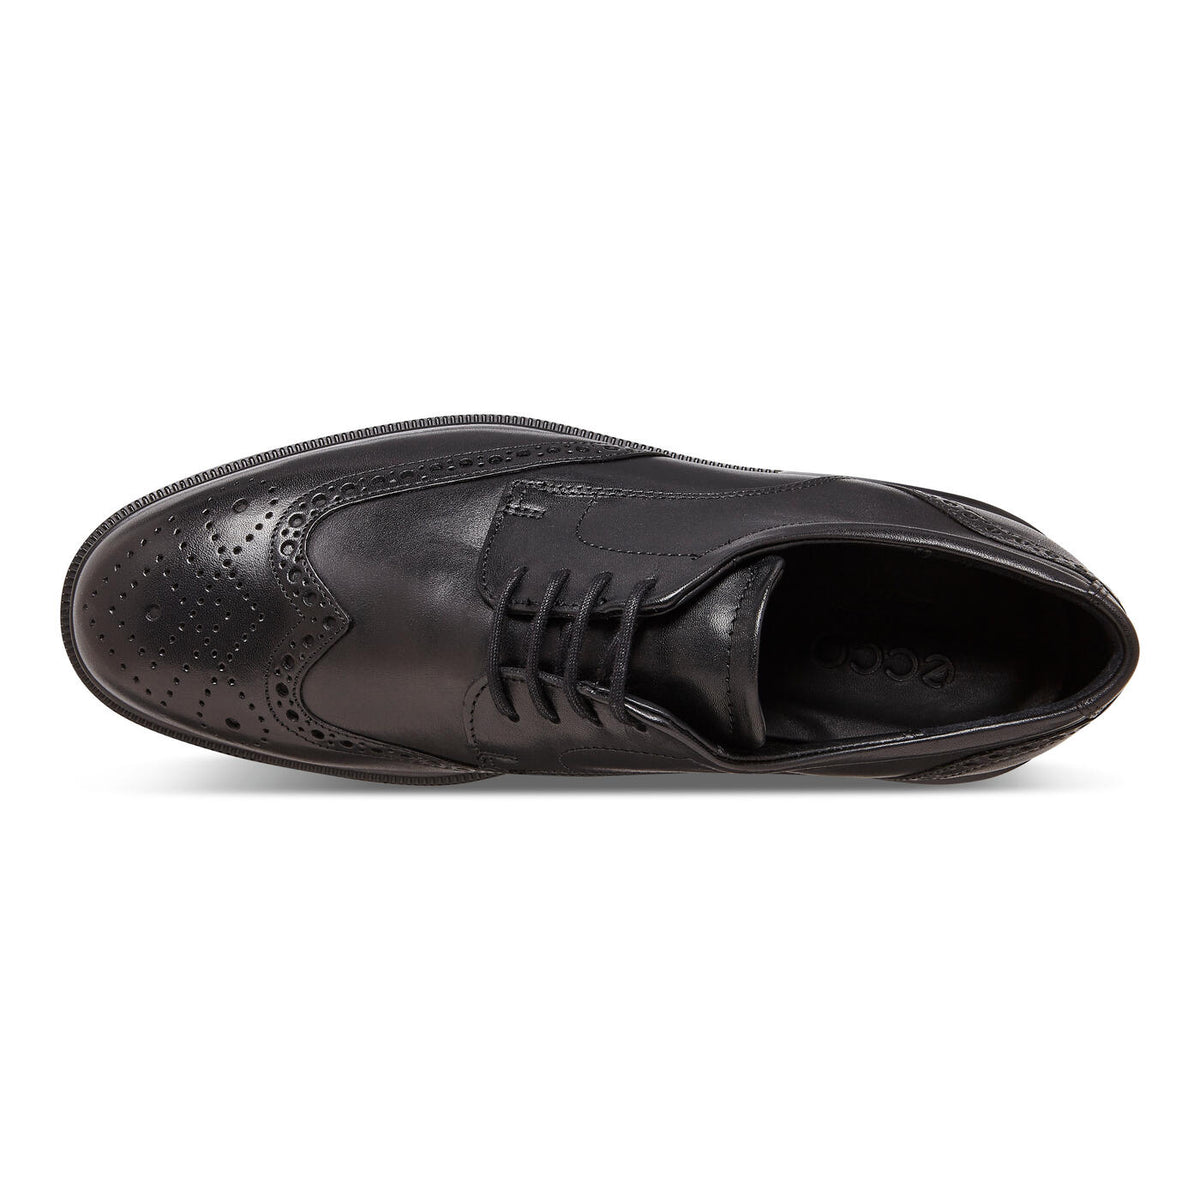 Ecco Men's Lisbon Brogue Tie Shoe in Black USA